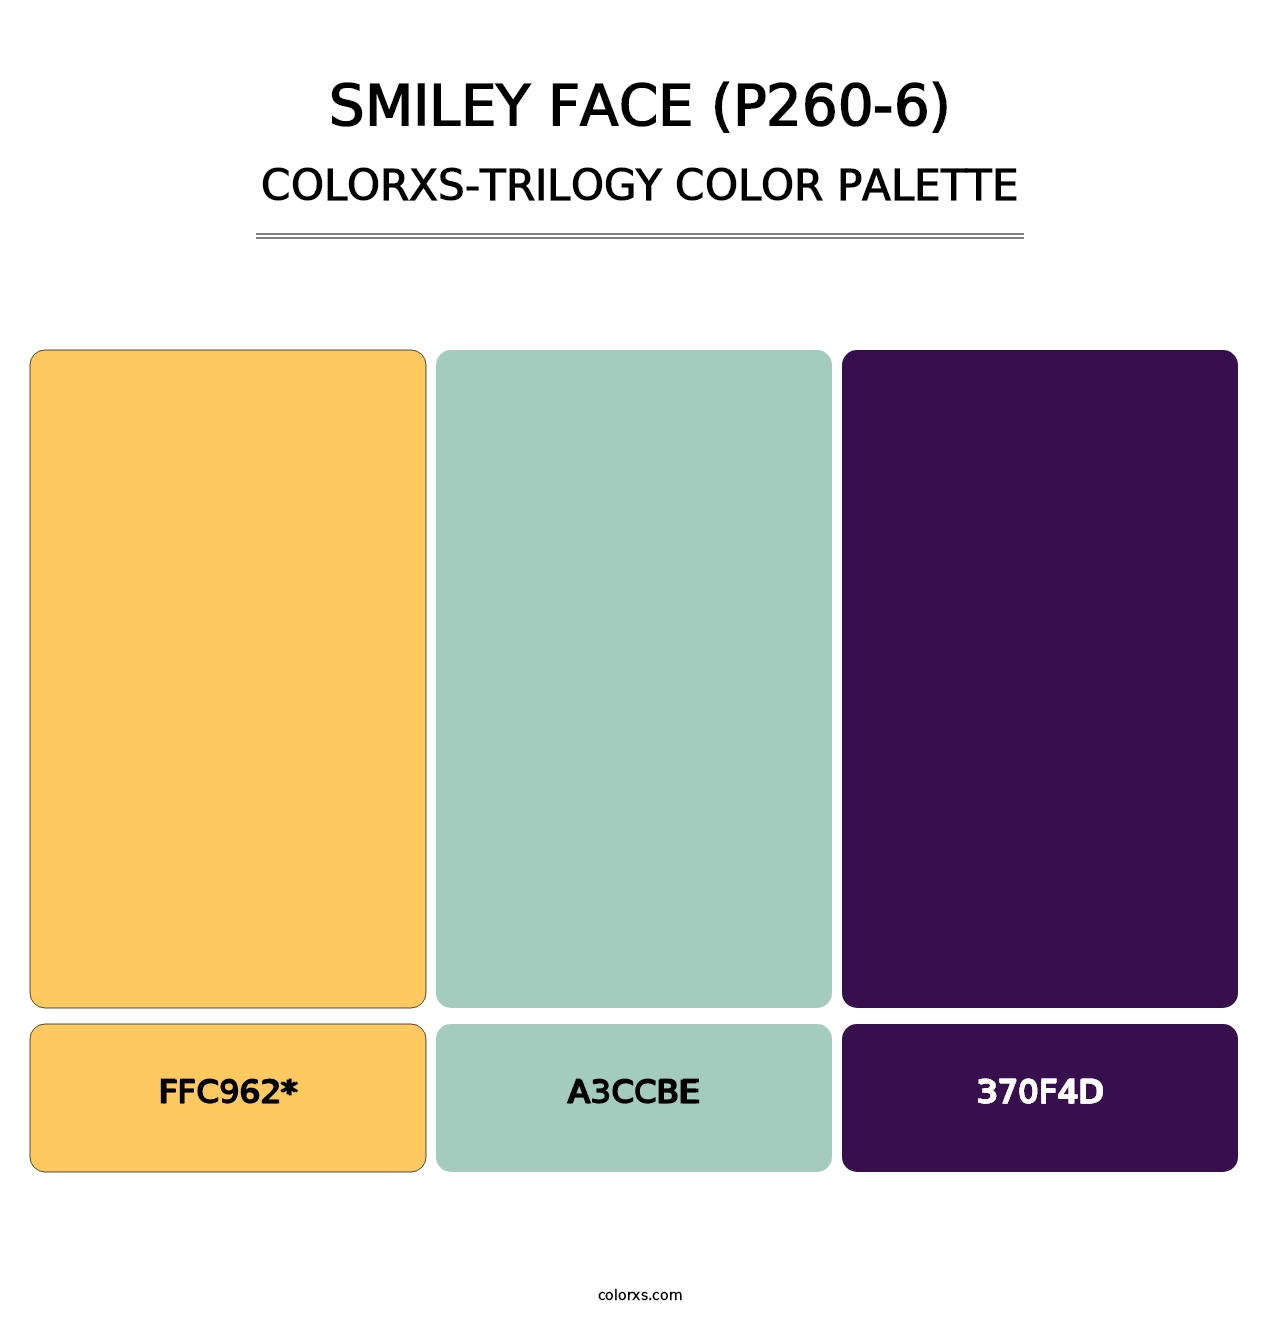 Smiley Face (P260-6) - Colorxs Trilogy Palette